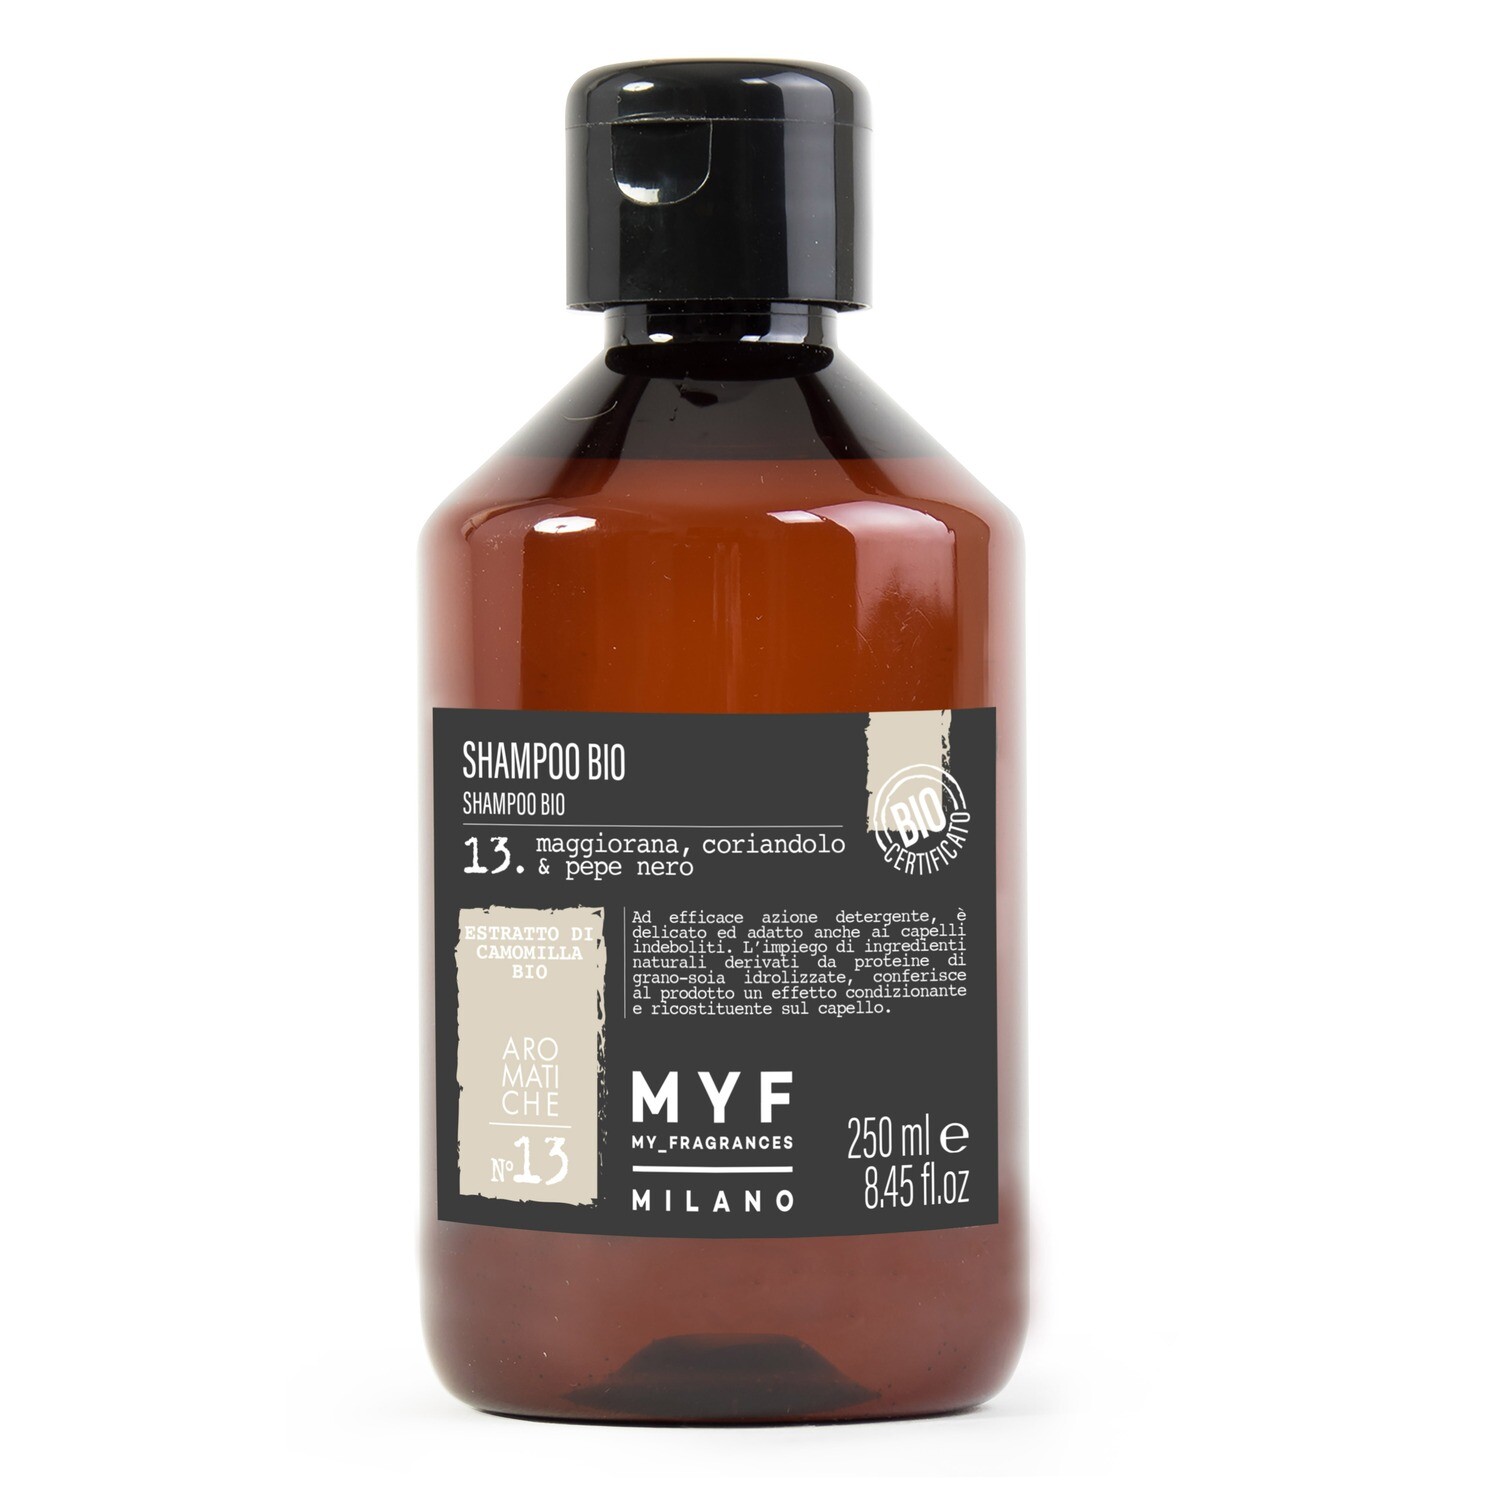 MYF - Shampoo 250 ML Maggiorana, Coriandolo & Pepe Nero
Bio Certificato